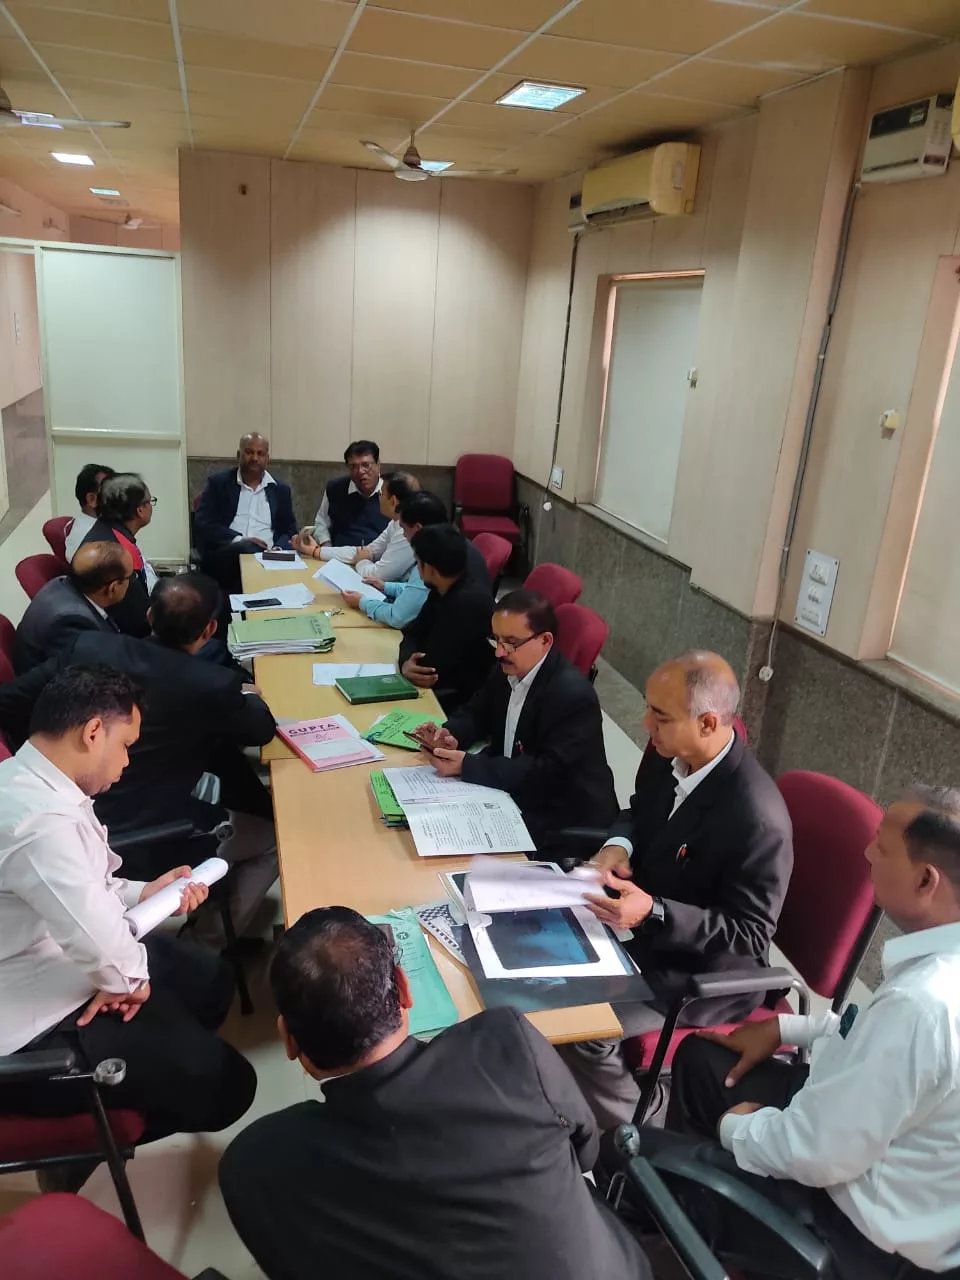 क्लेम प्रकरणों के निराकरण के संबंध में बीमा कंपनी के अधिकारियों व ‌अधिवक्ताओं के साथ प्रिसिटिंग बैठक आयोजित | New India Times